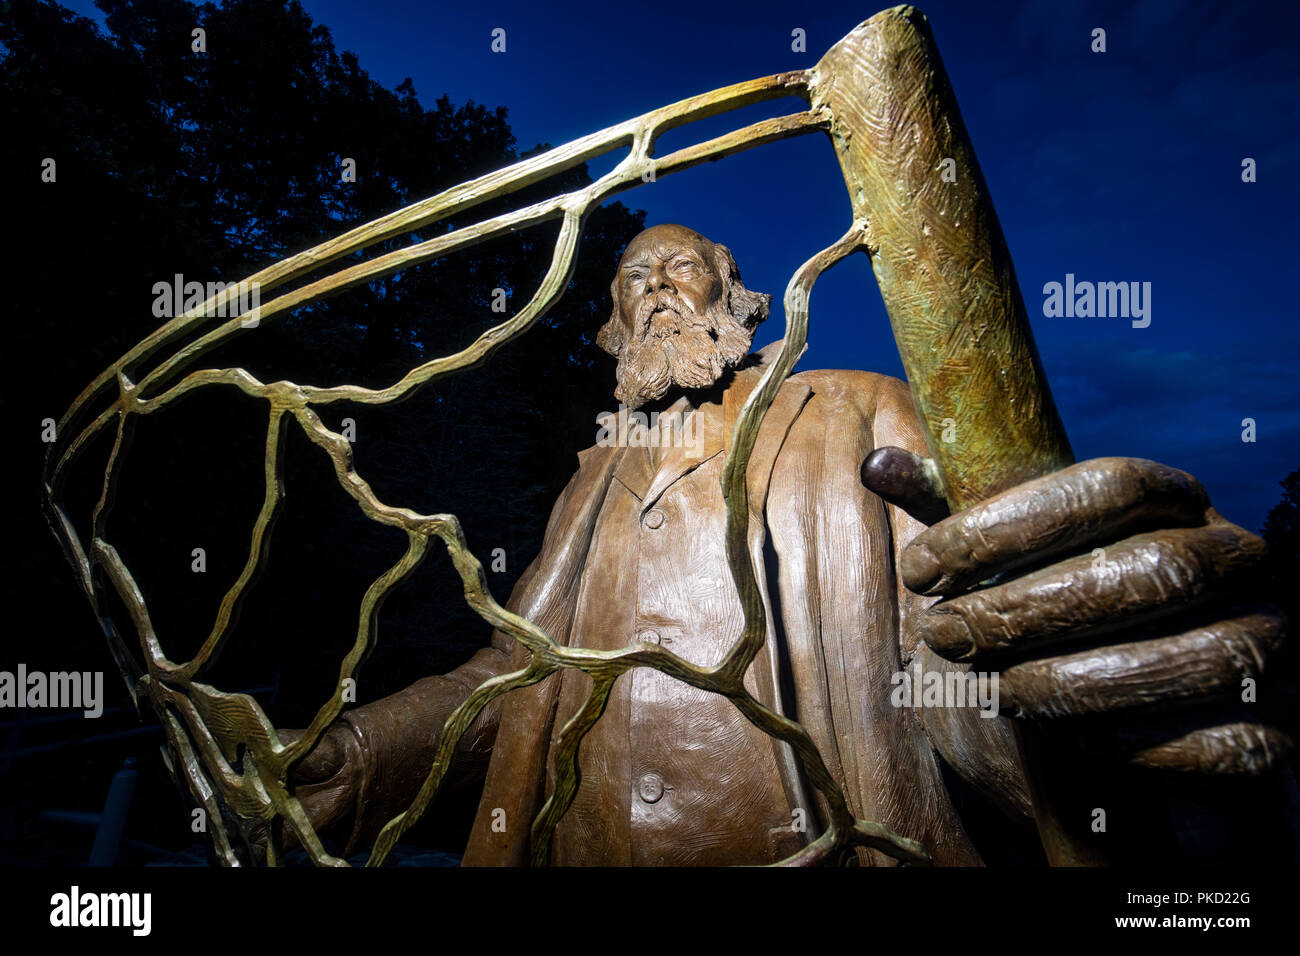 Frederick legge Olmsted - padre americano di architettura del paesaggio - statua in bronzo per artista Zenos Frudakis - North Carolina Arboretum di Asheville Nort Foto Stock